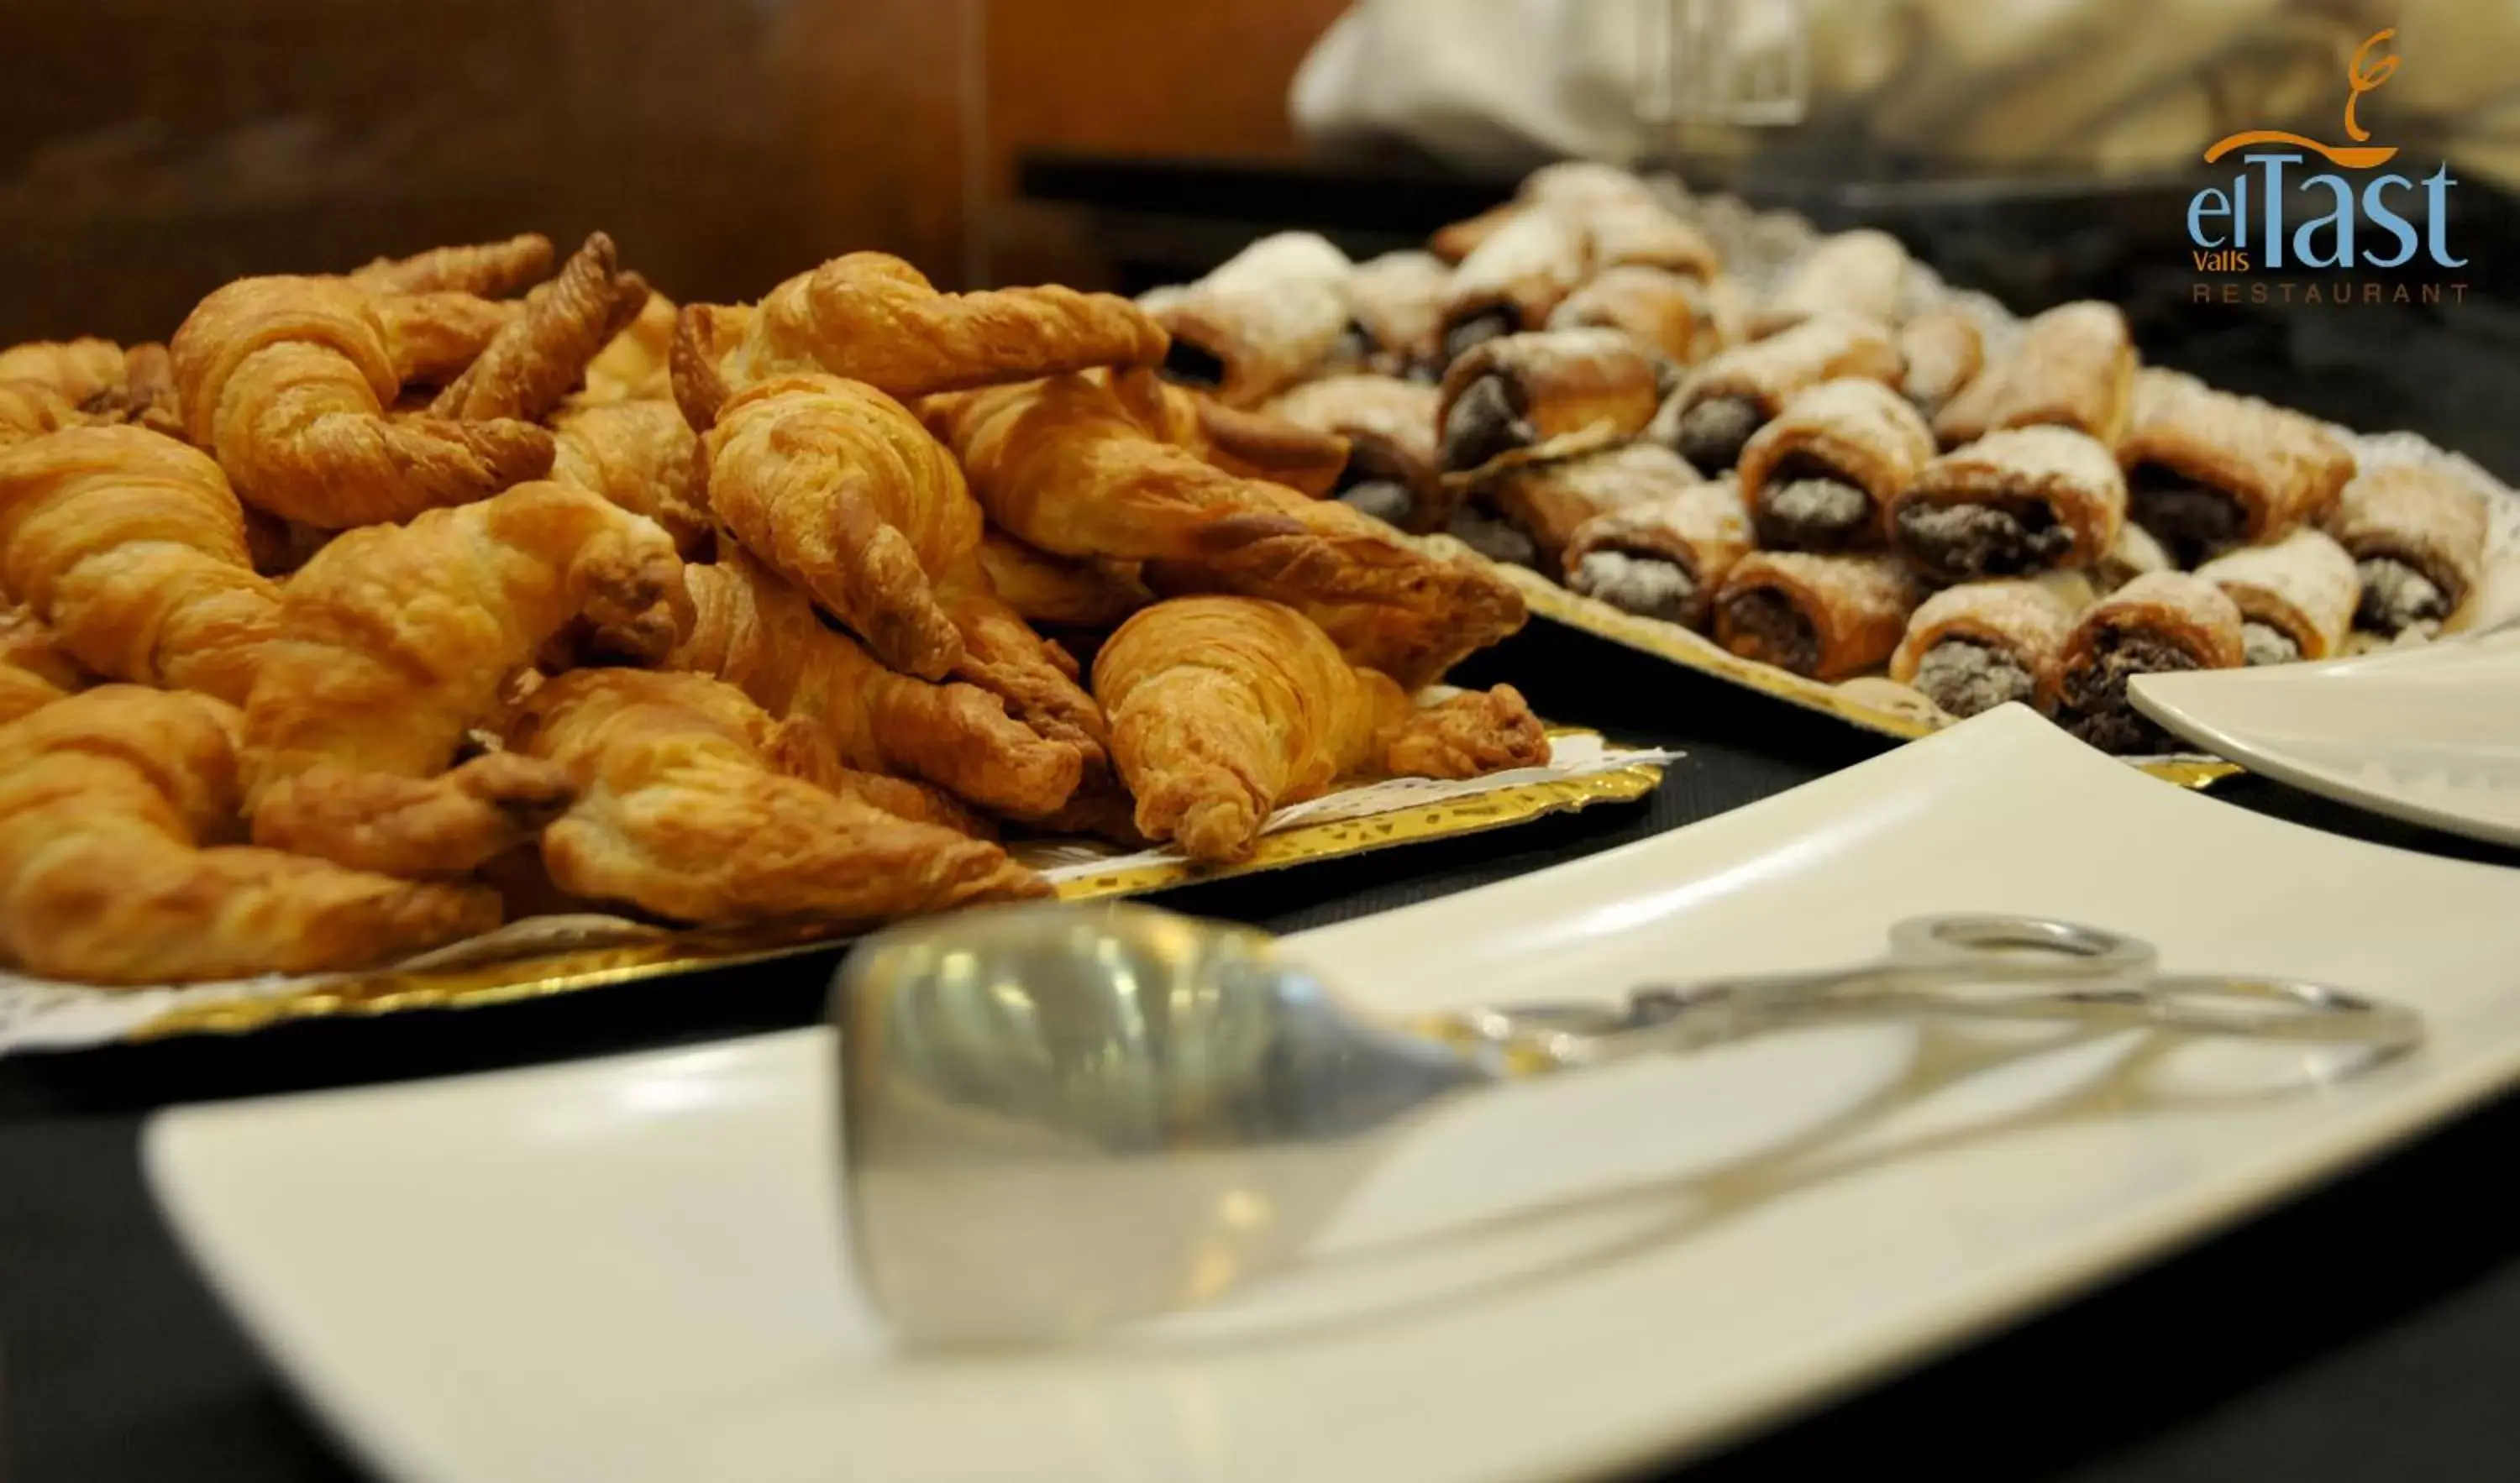 Buffet breakfast in Hotel Class Valls